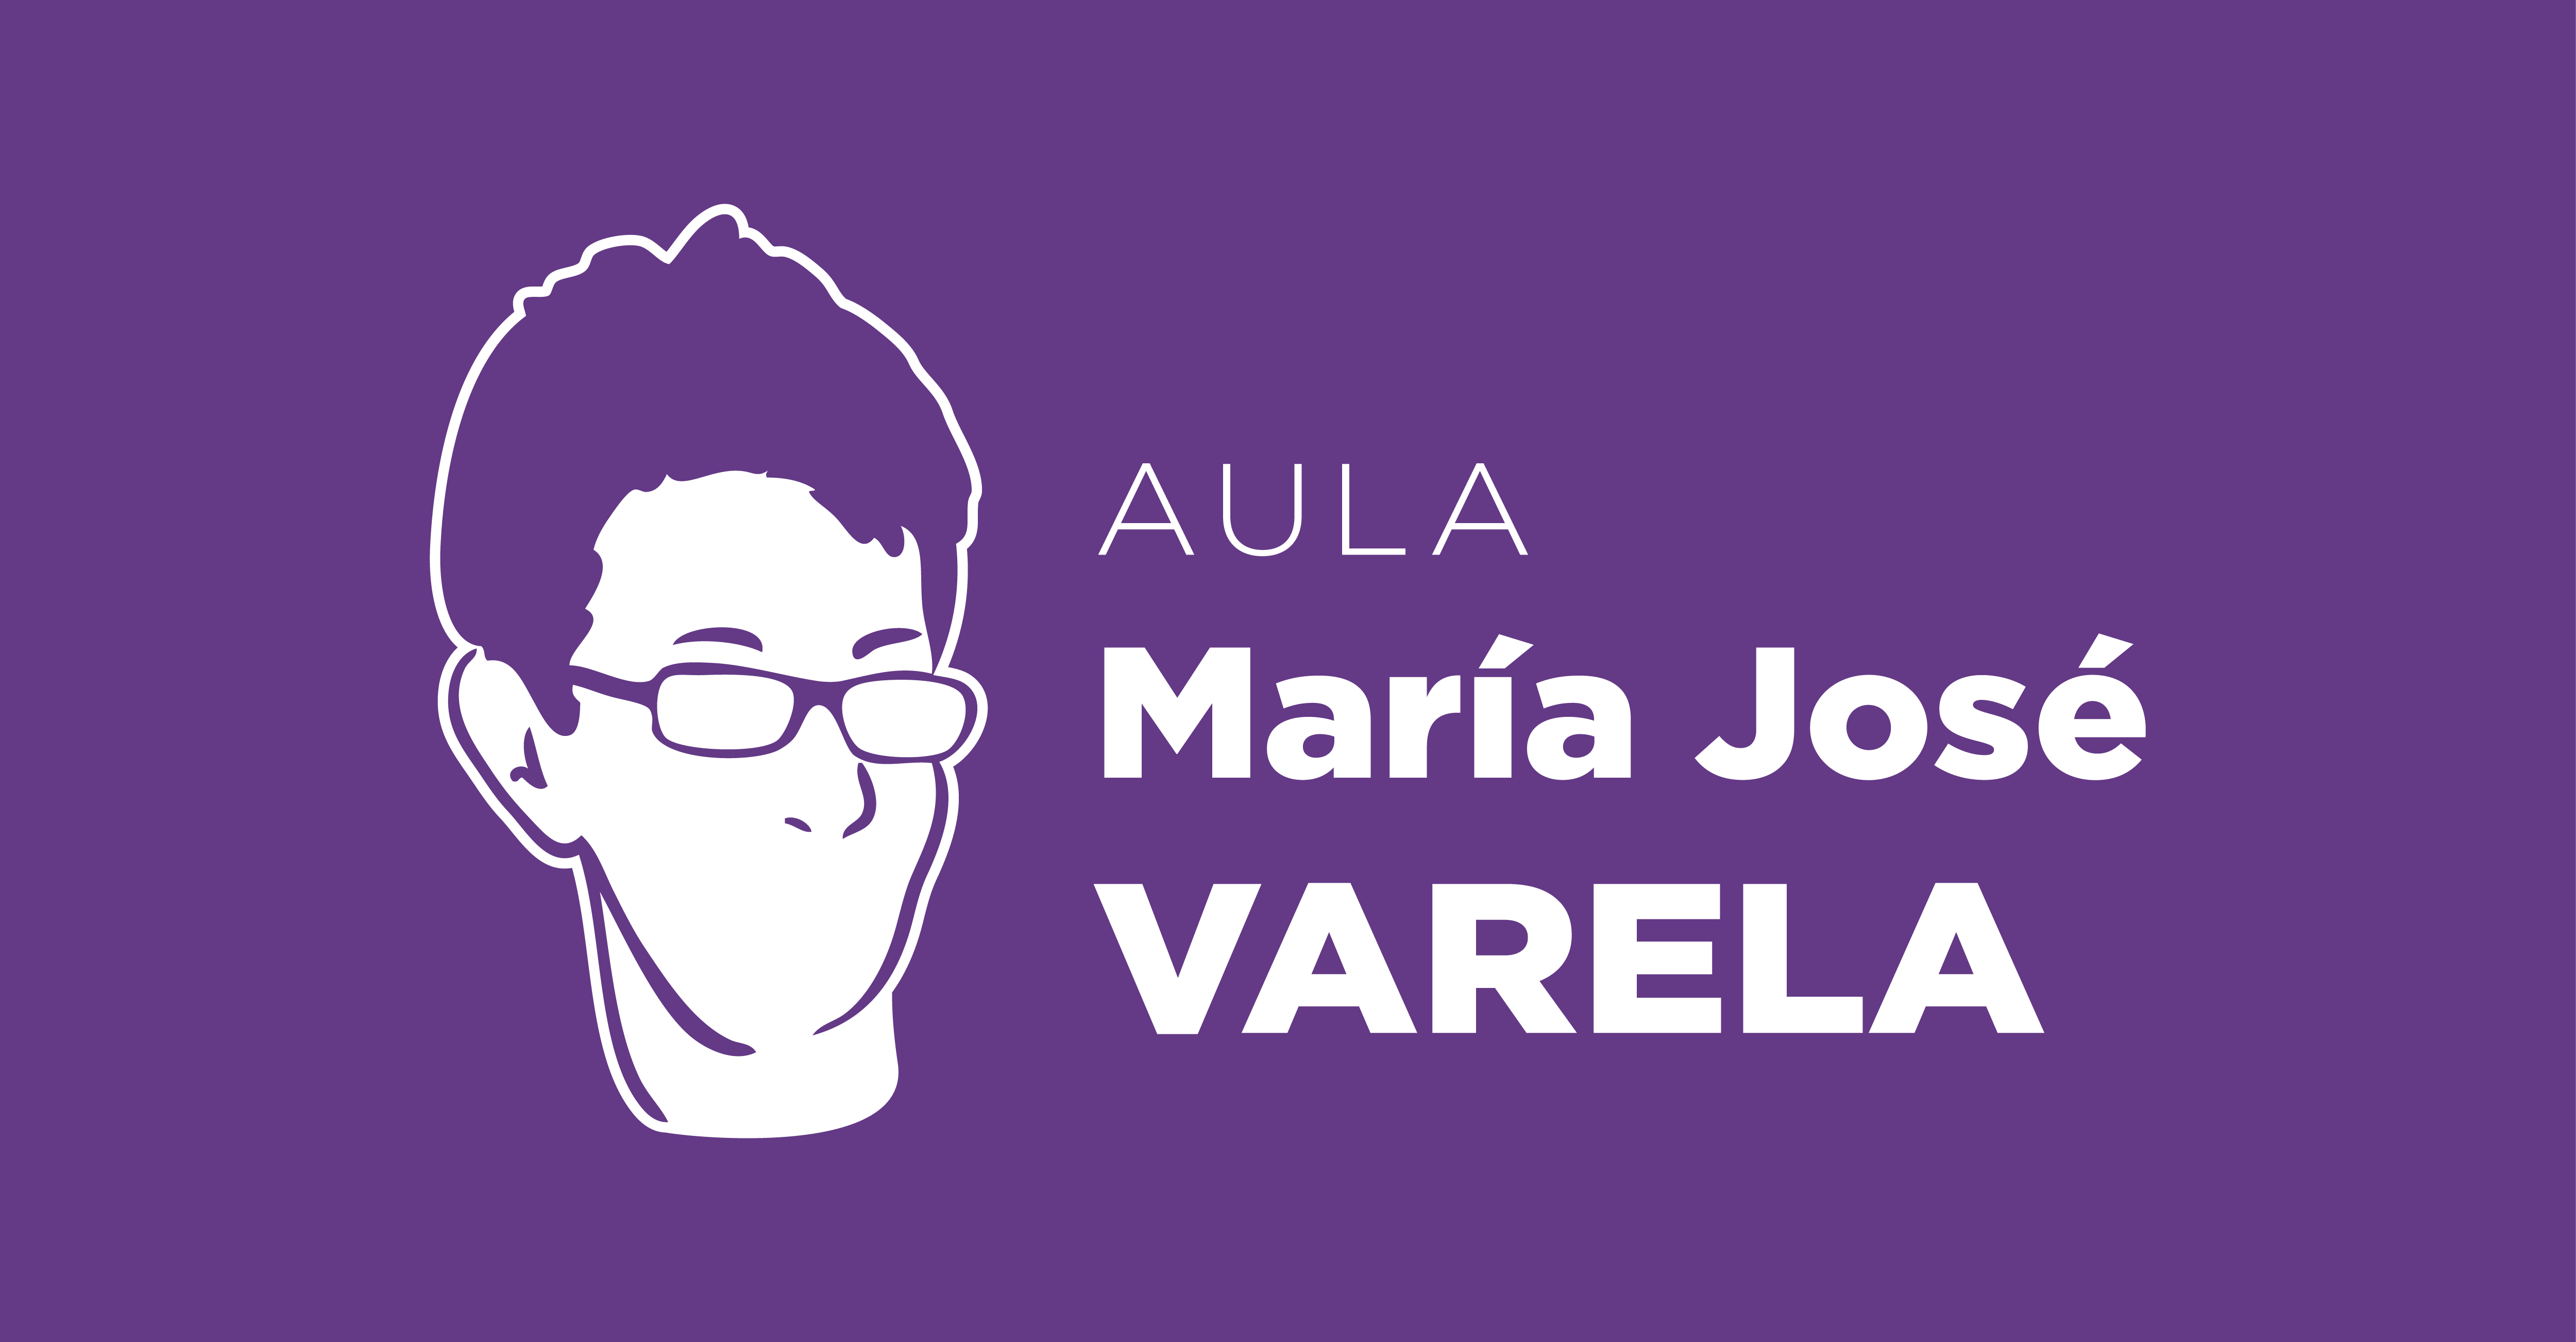 Aula María José Varela.